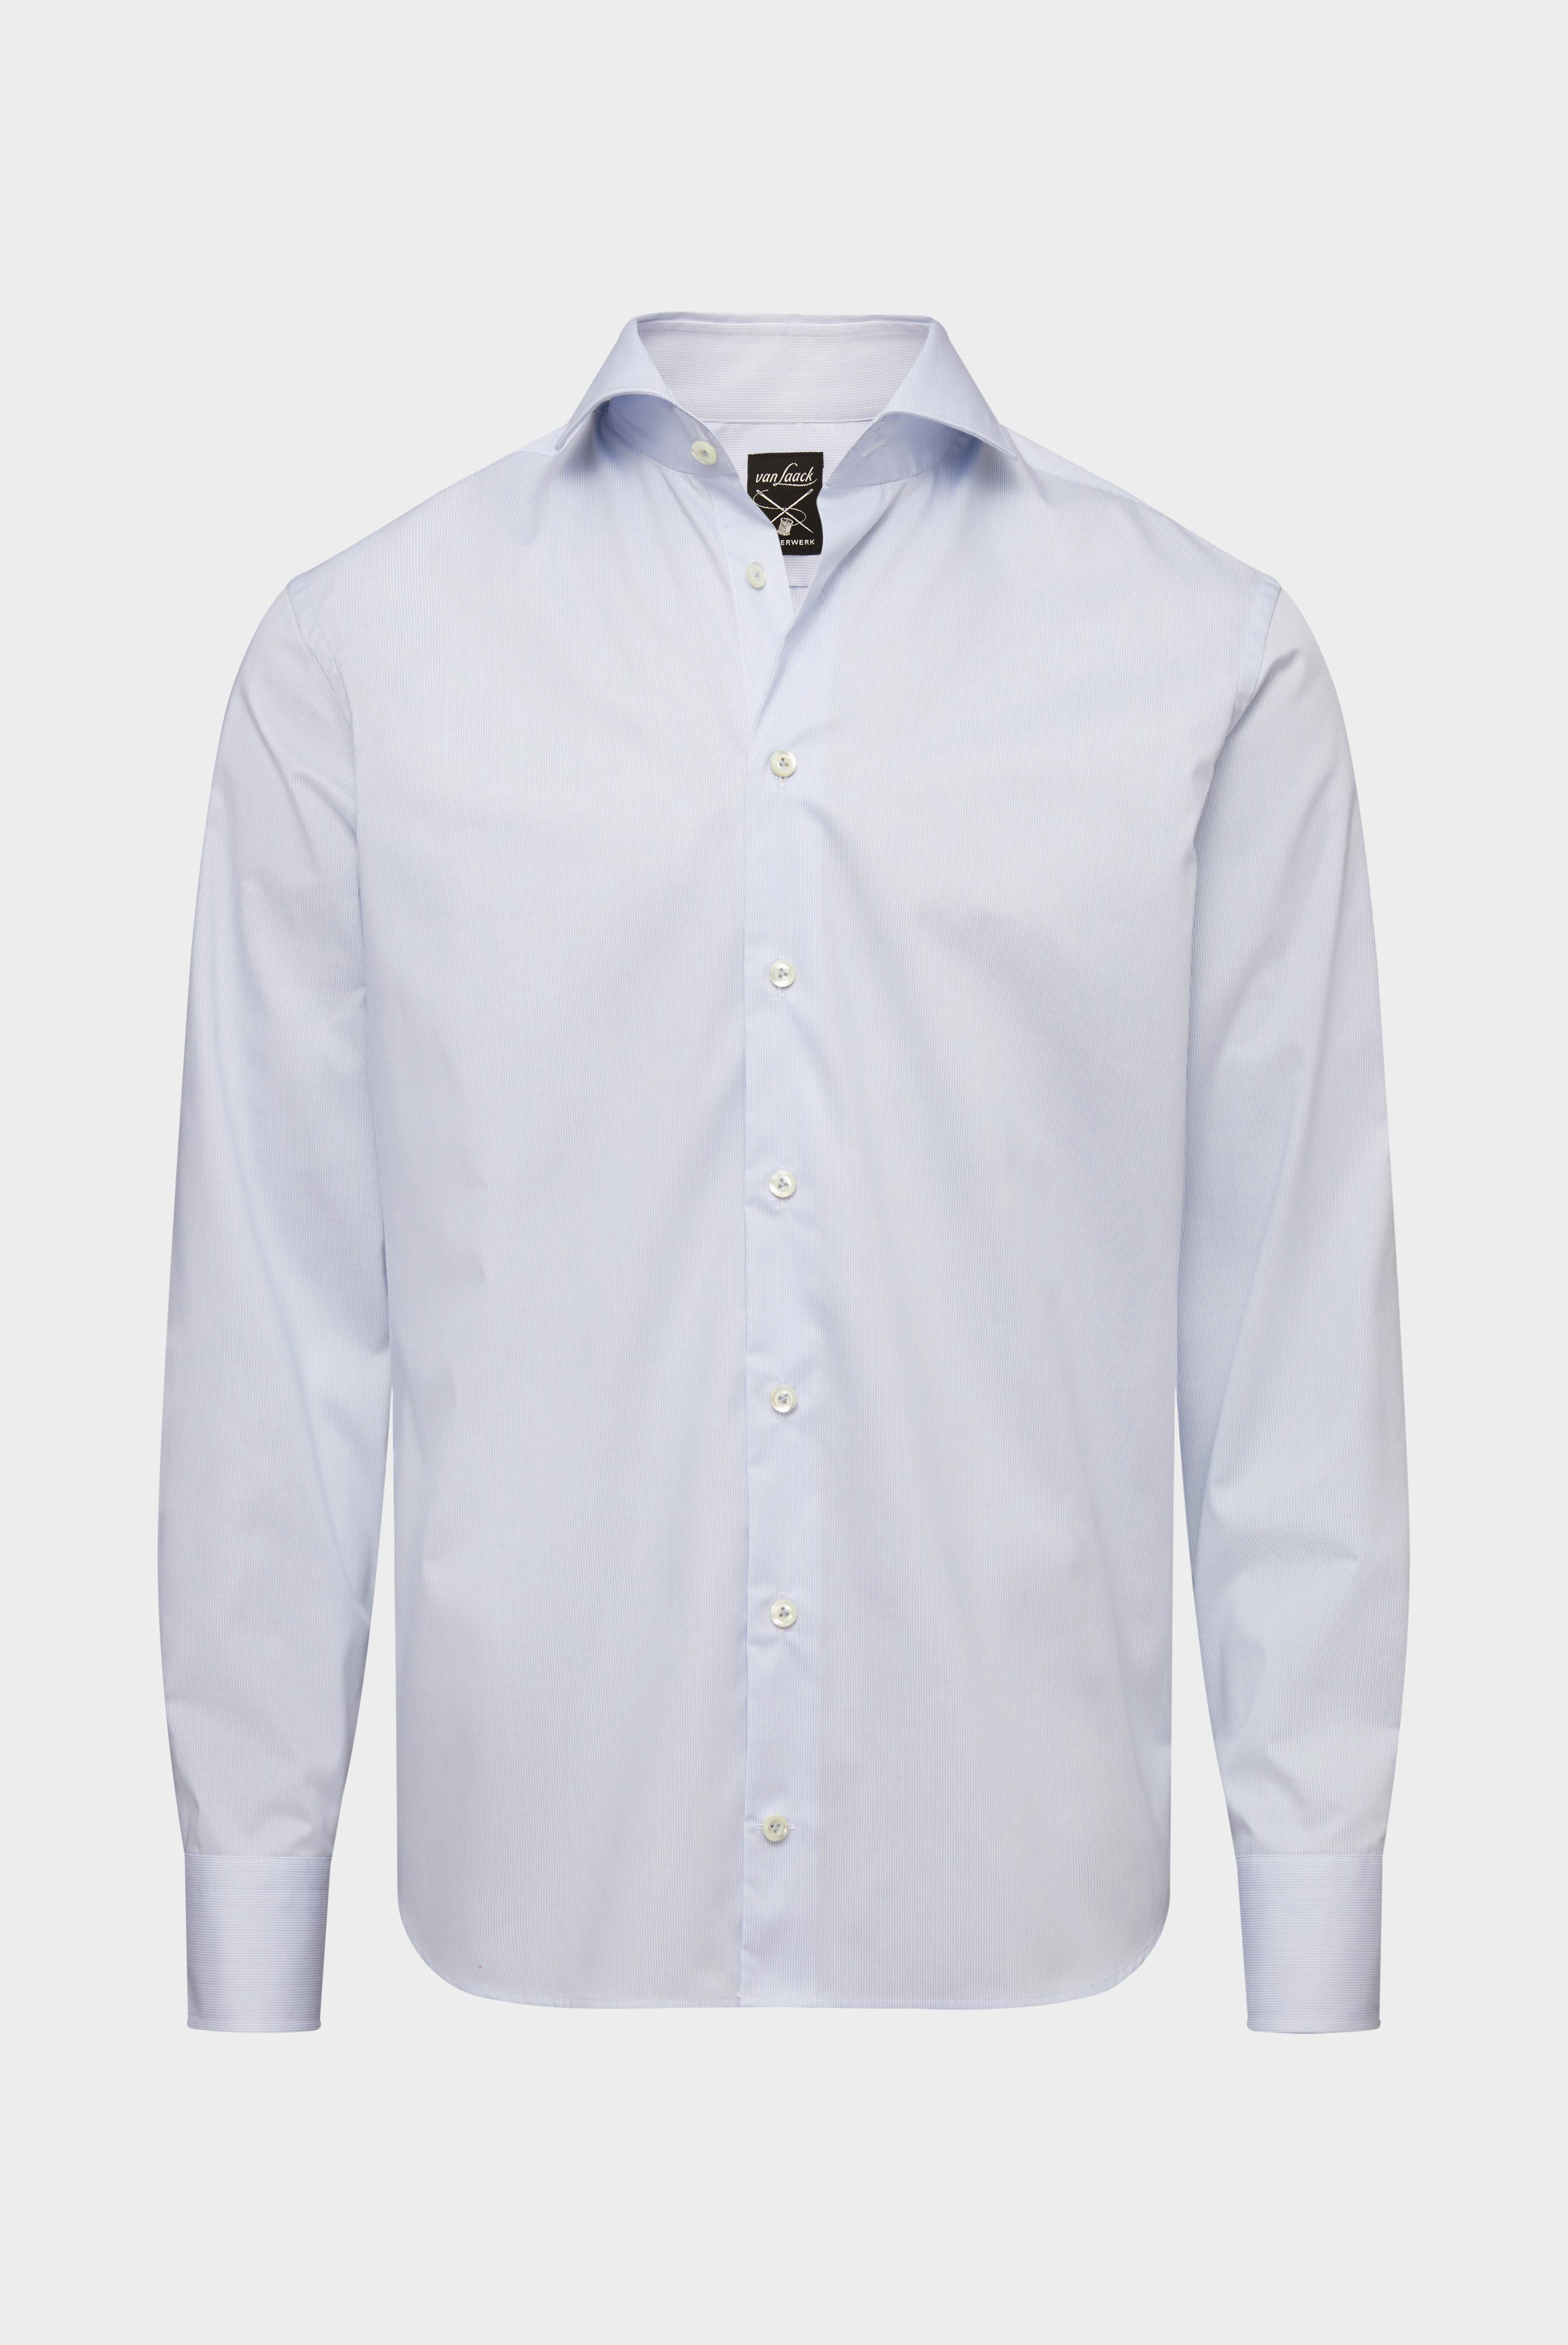 Bügelleichte Hemden+Bügelfreies Twill Hemd Tailor Fit+20.2020.BQ.132959.720.37